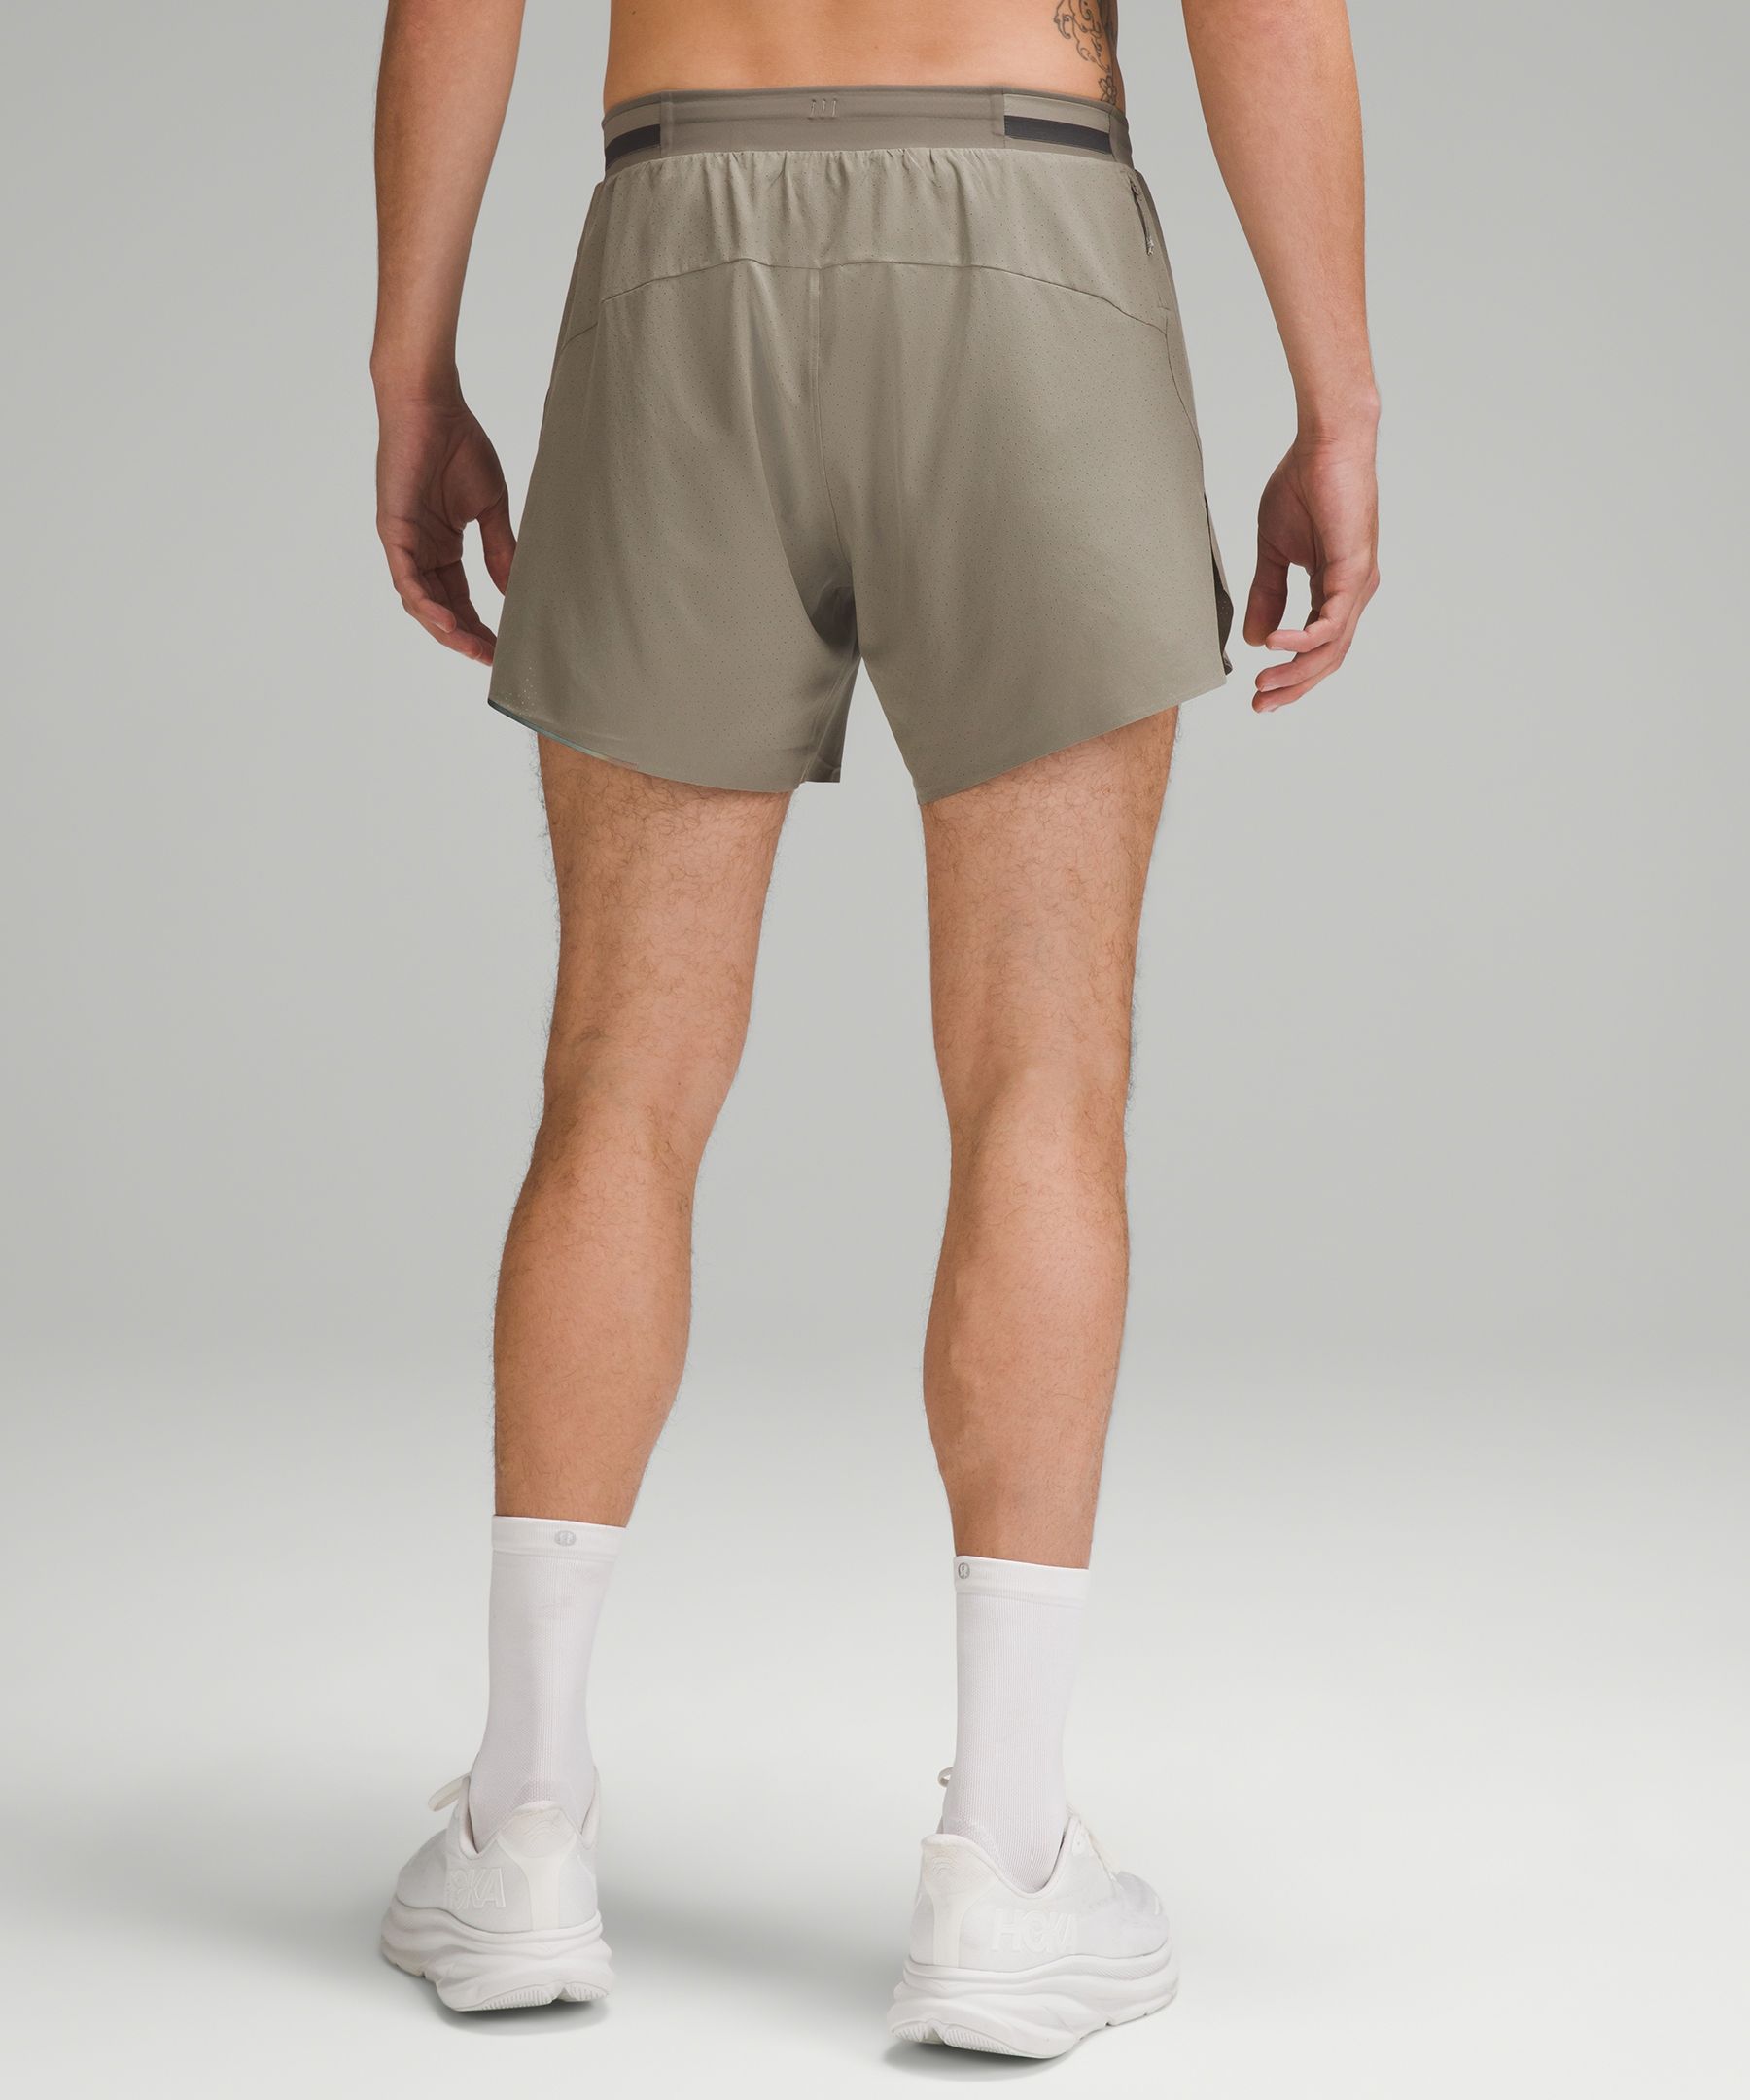 lululemon - Fast And Free Shorts on Designer Wardrobe